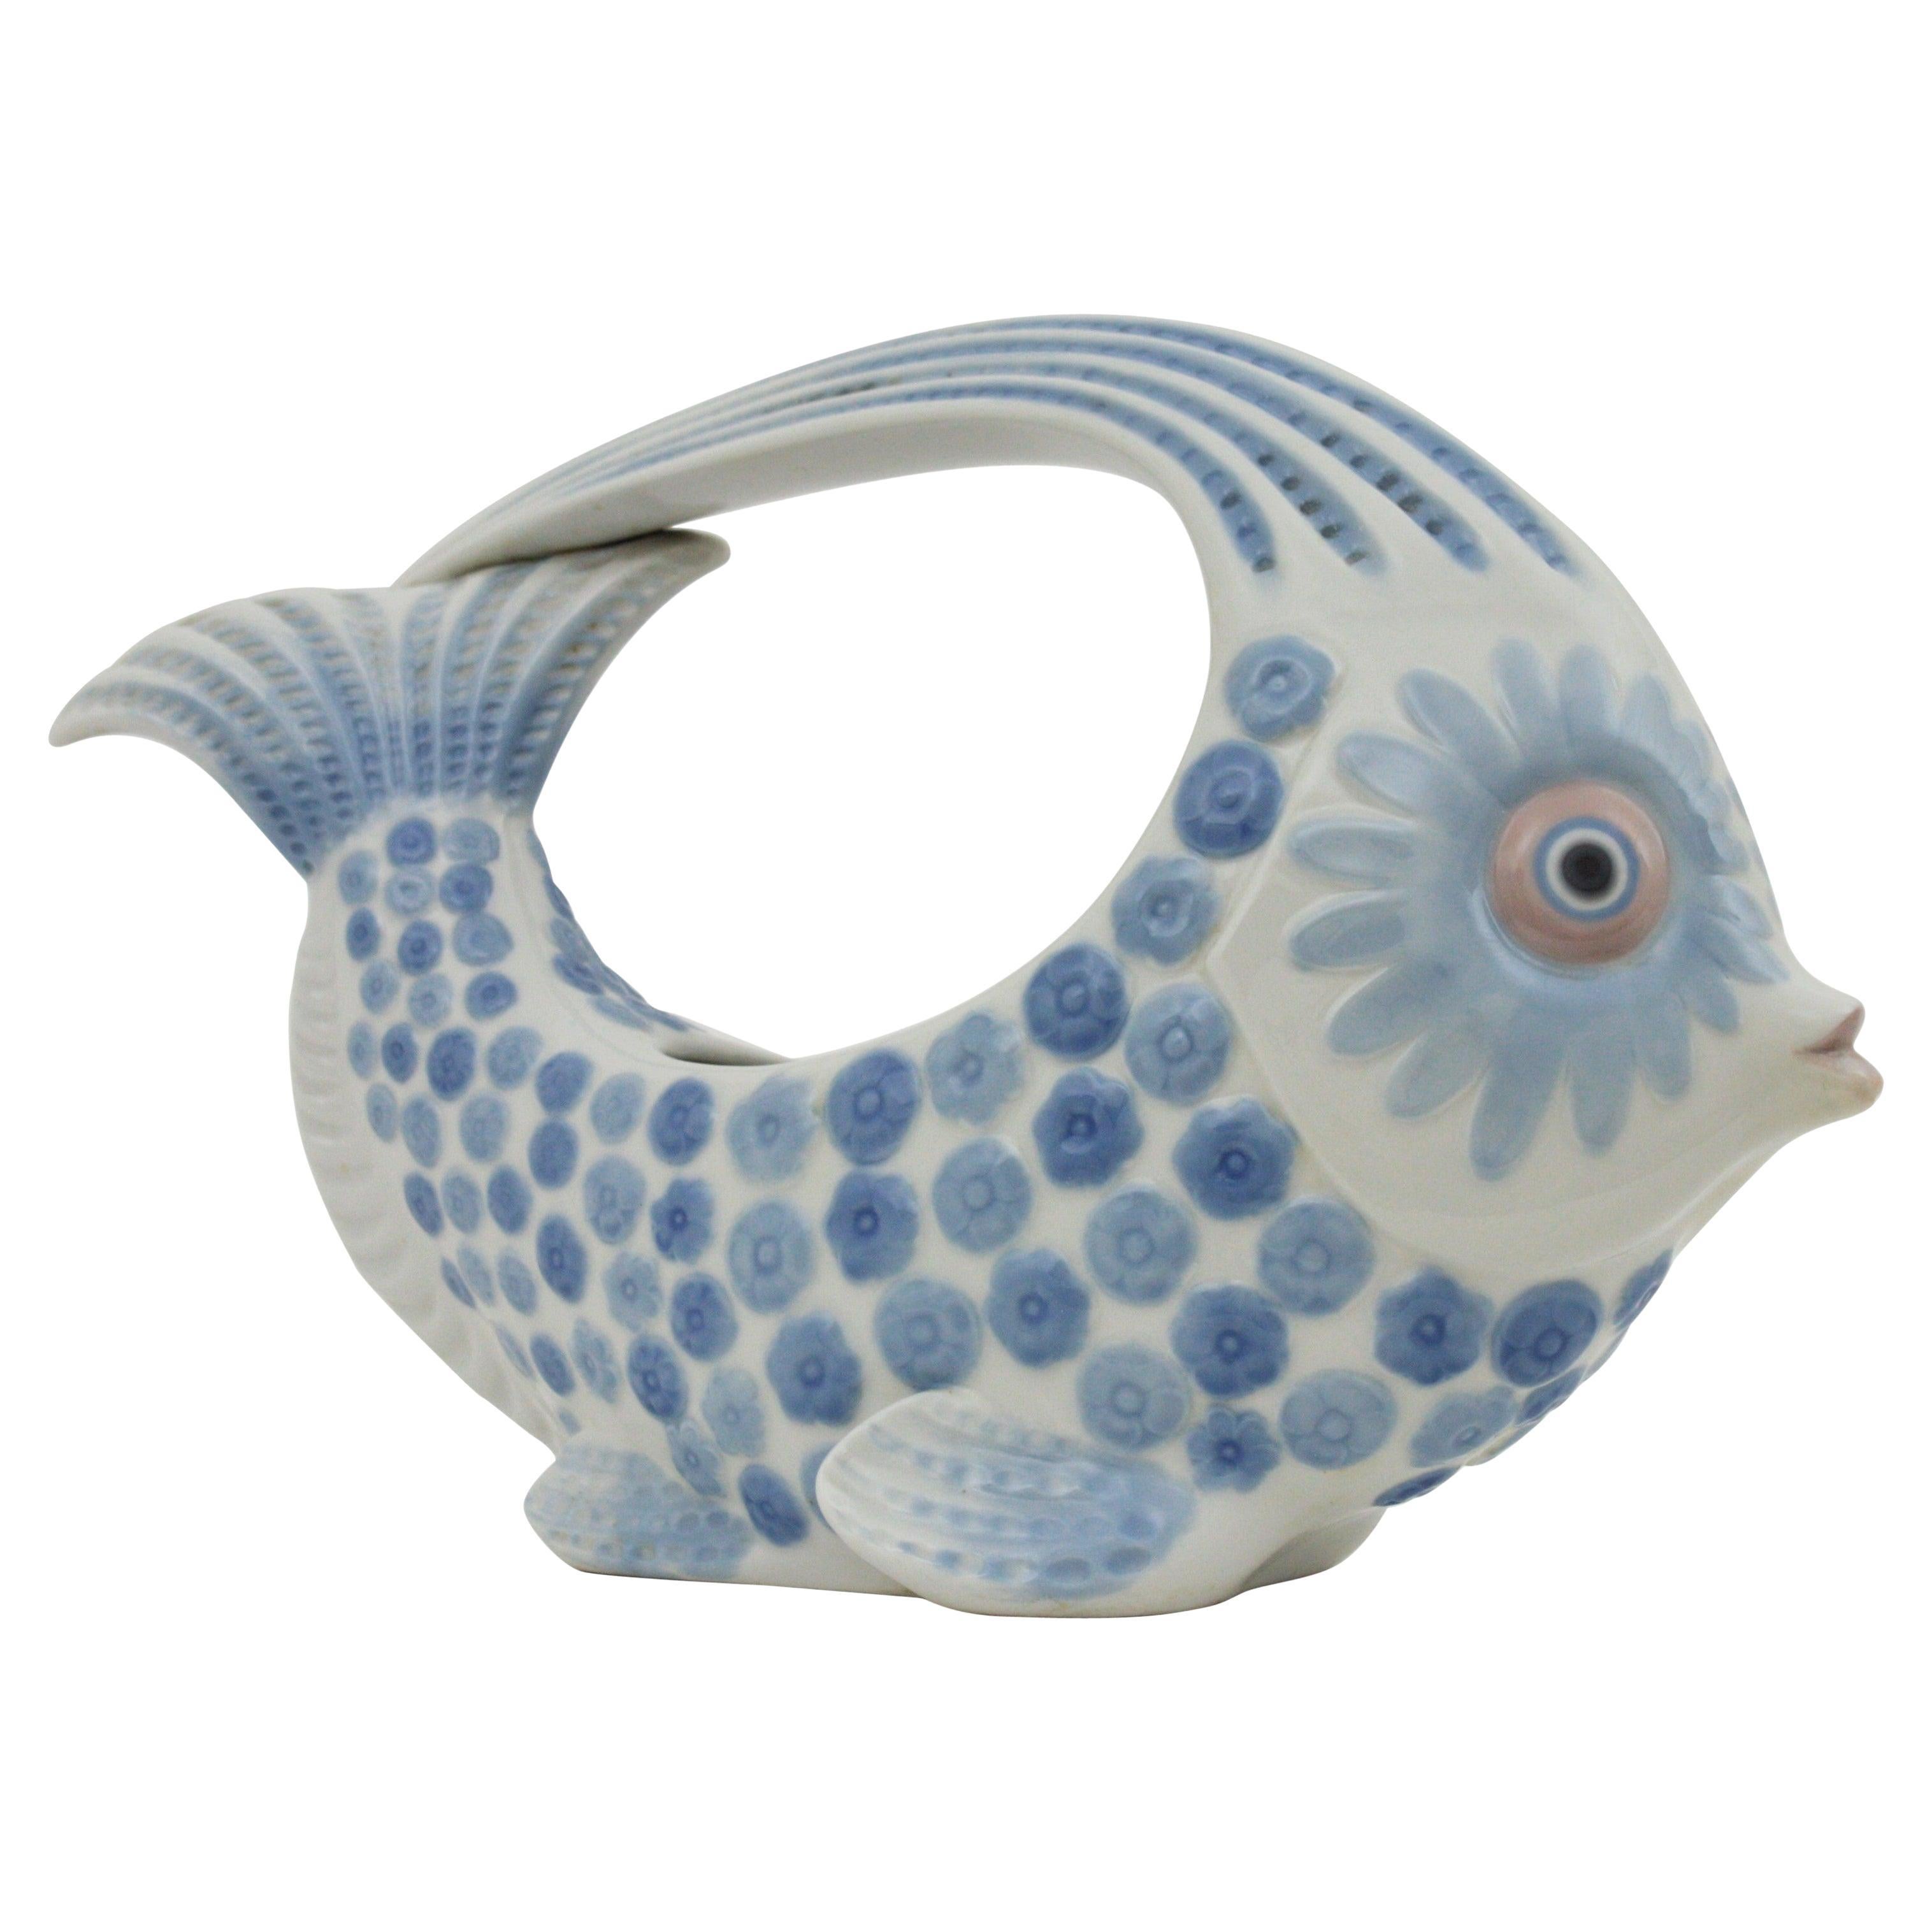 Lladro Porzellan Blau Weiß Fisch Figur Centerpiece oder Pflanzer:: Spanien:: 1970er Jahre